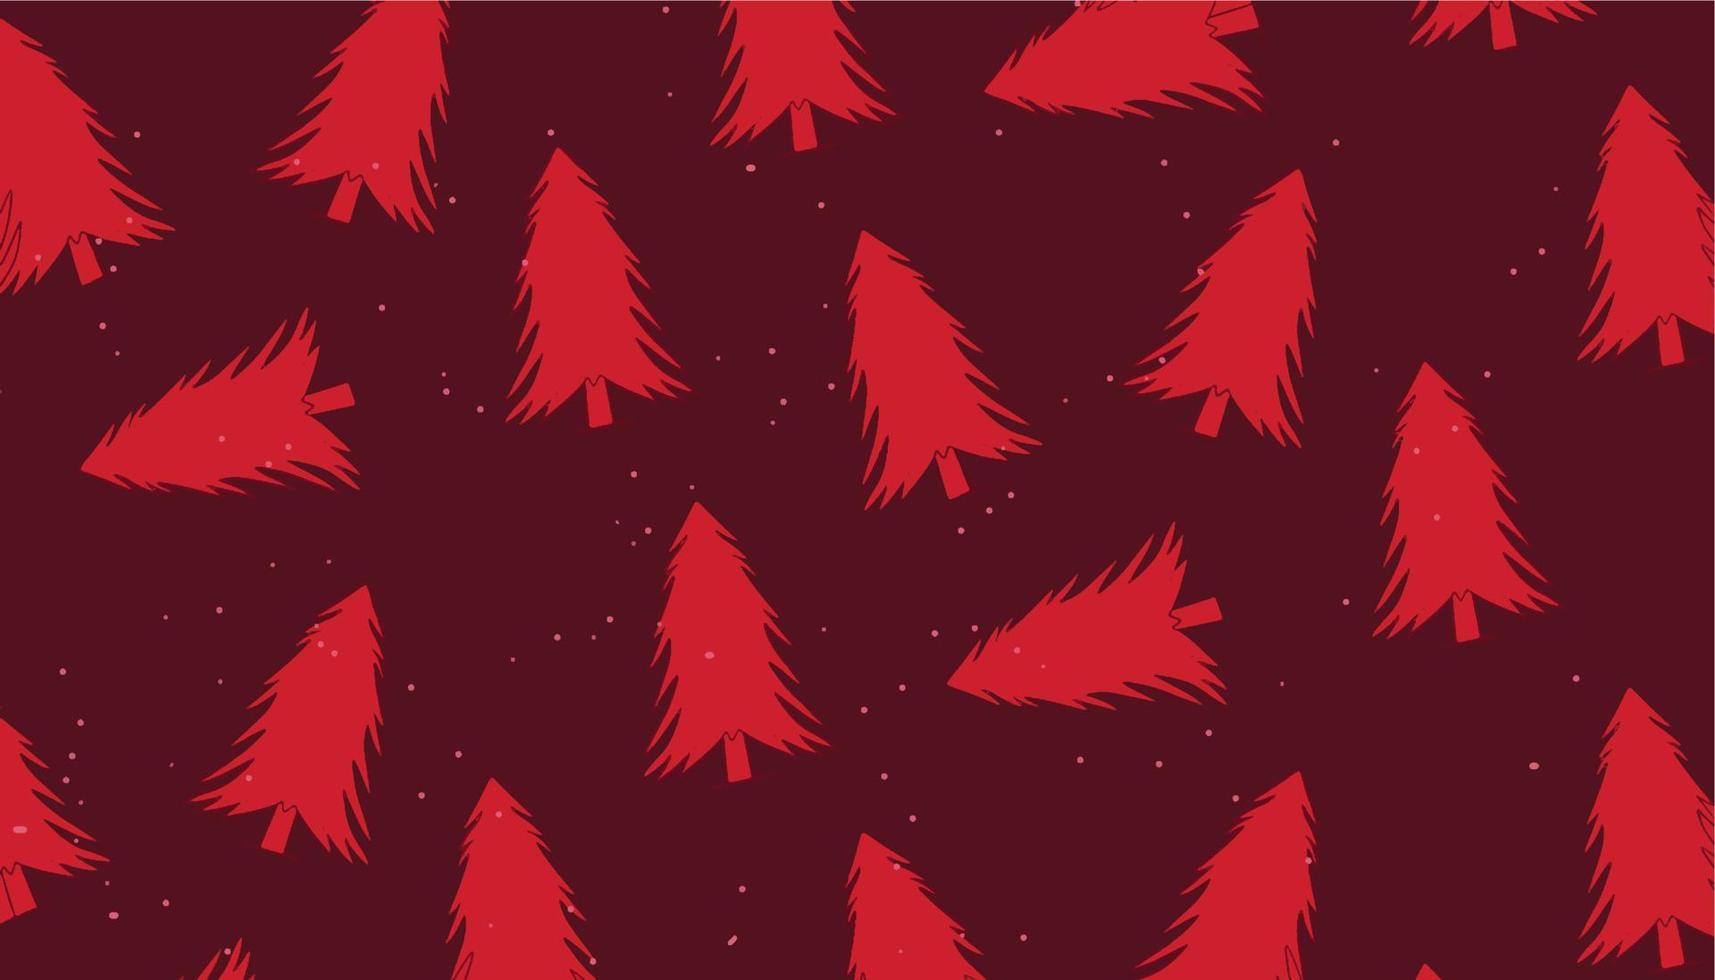 nahtlose weihnachten liefert hintergrundvektorillustration vektor